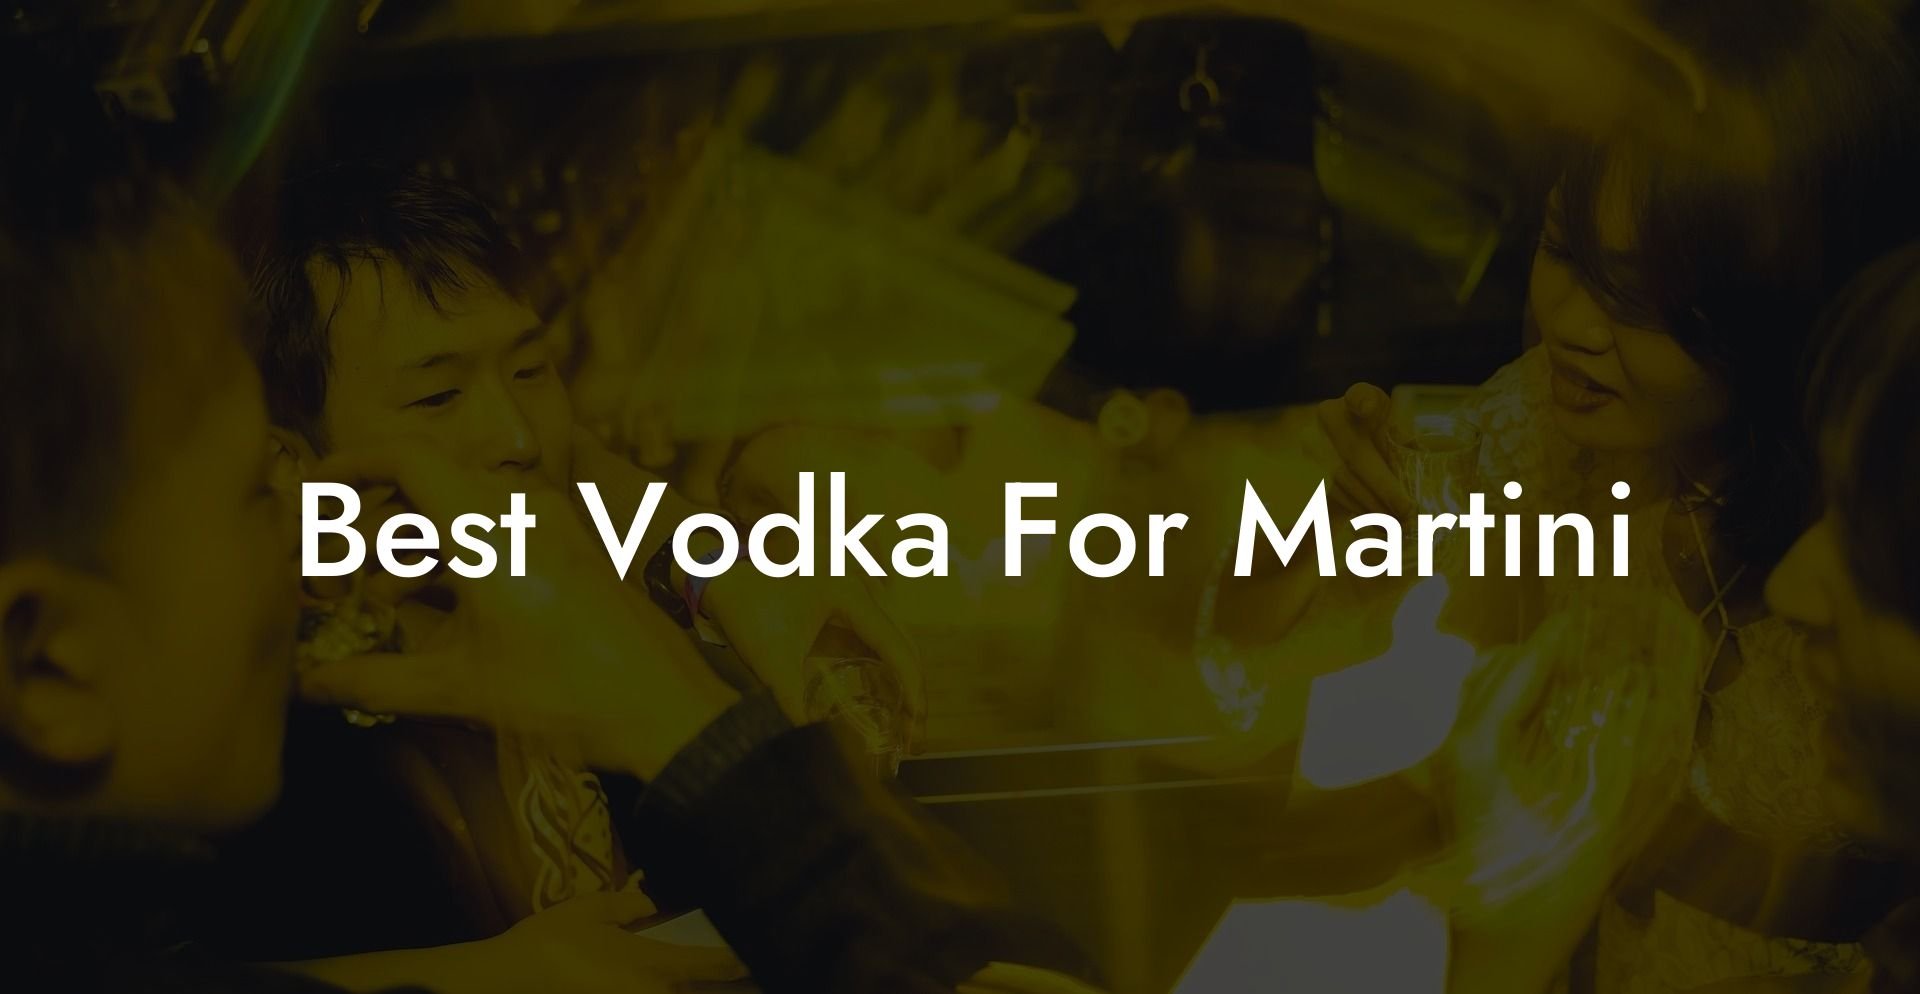 Best Vodka For Martini